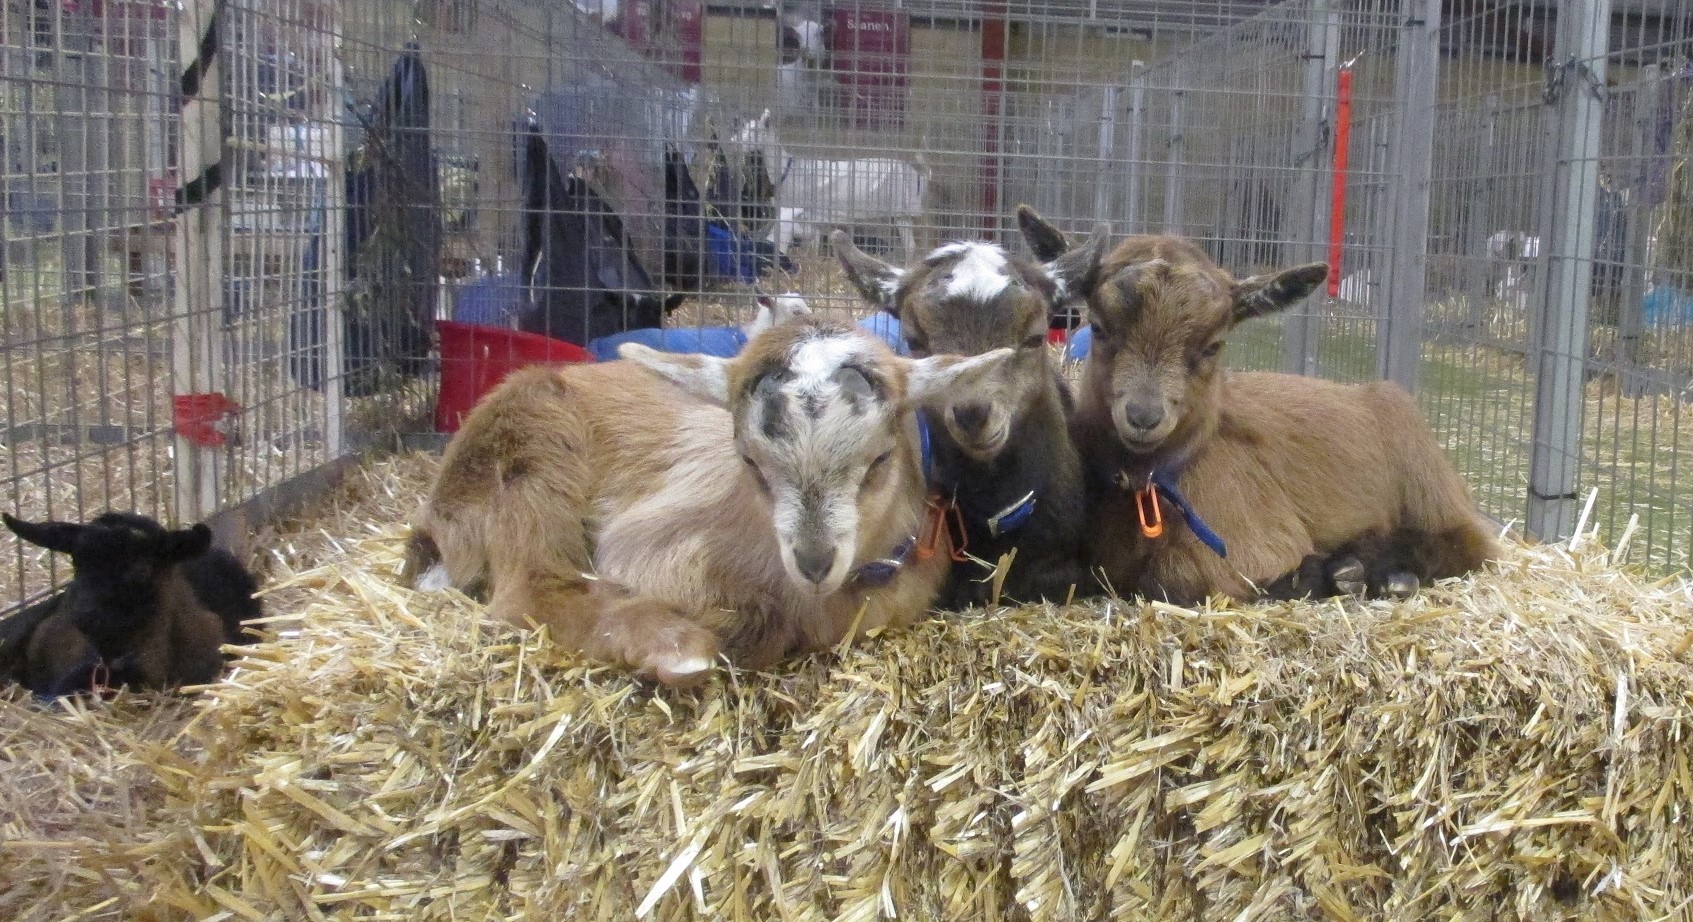 dwarf Nigerian goats, Perth Royal Show, Western Australia